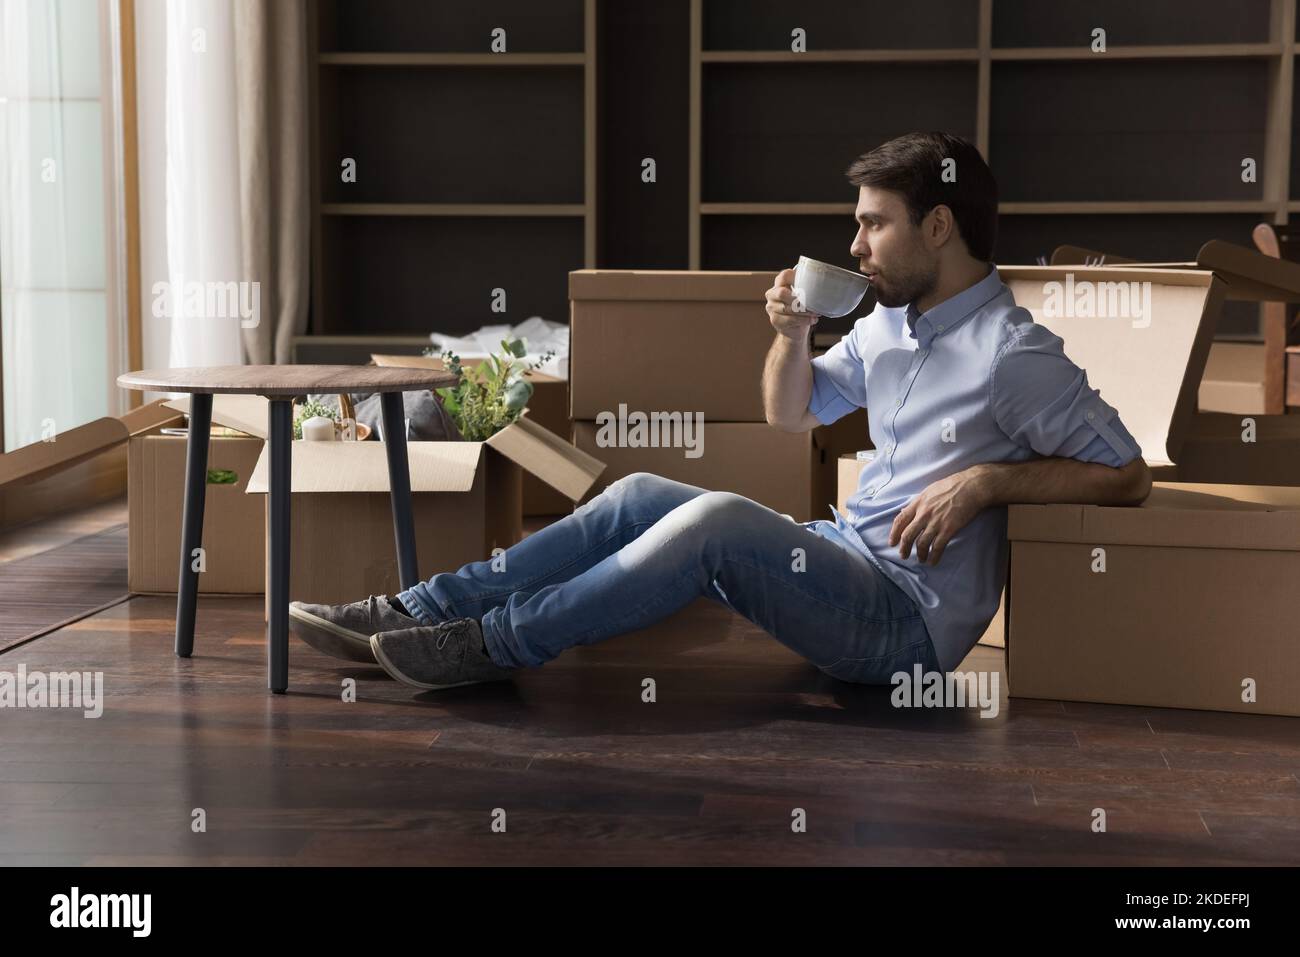 Mann, der sich mit einem Kaffeebecher in der Nähe von Pappkartons entspannt Stockfoto